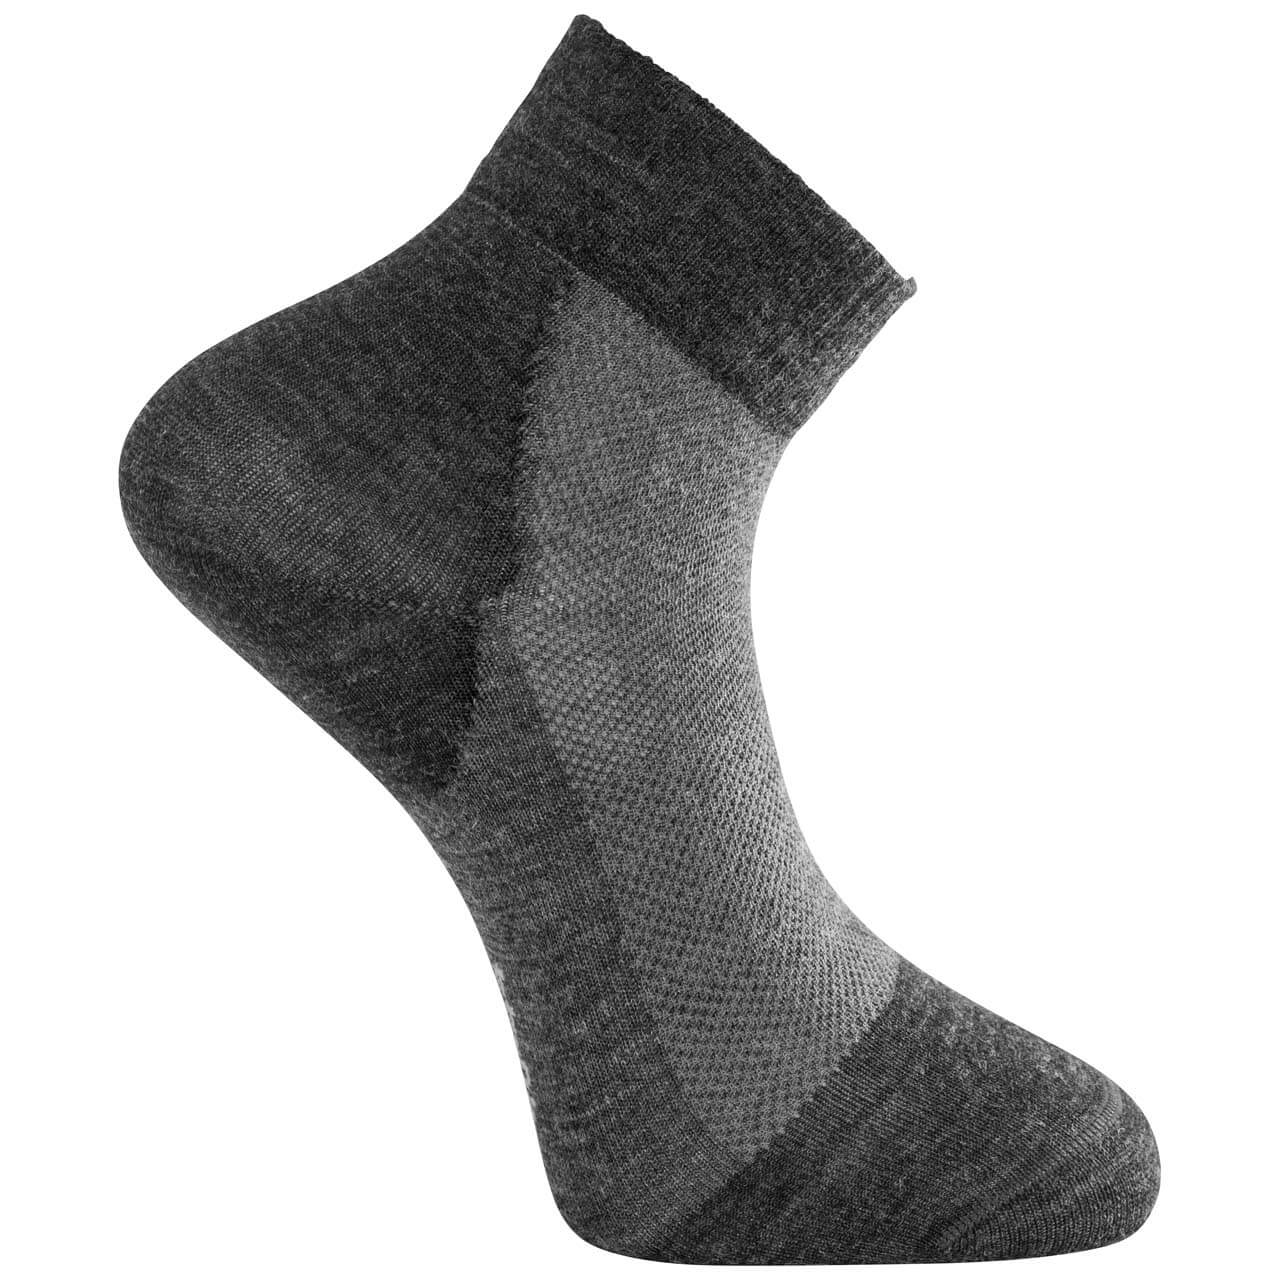 Woolpower Skilled Liner Short - Dark Grey/Grey, 40-44